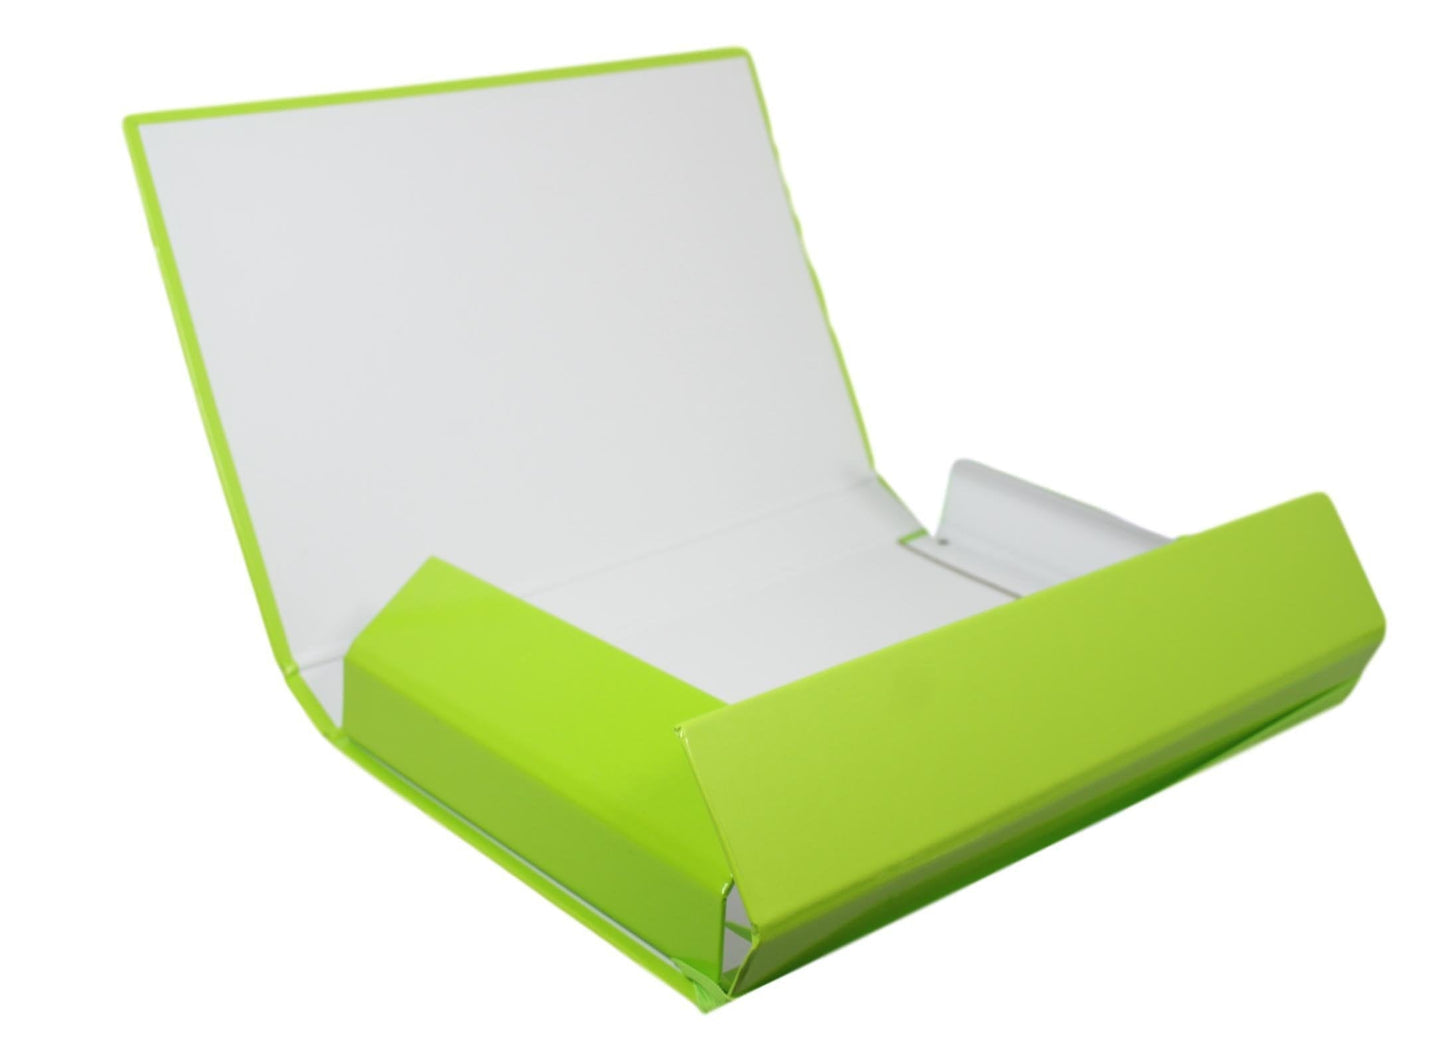 Cardboard Easy Make Flat Archive Folder Paper File Folder Assorted Colours A4 5475 (Parcel Rate)